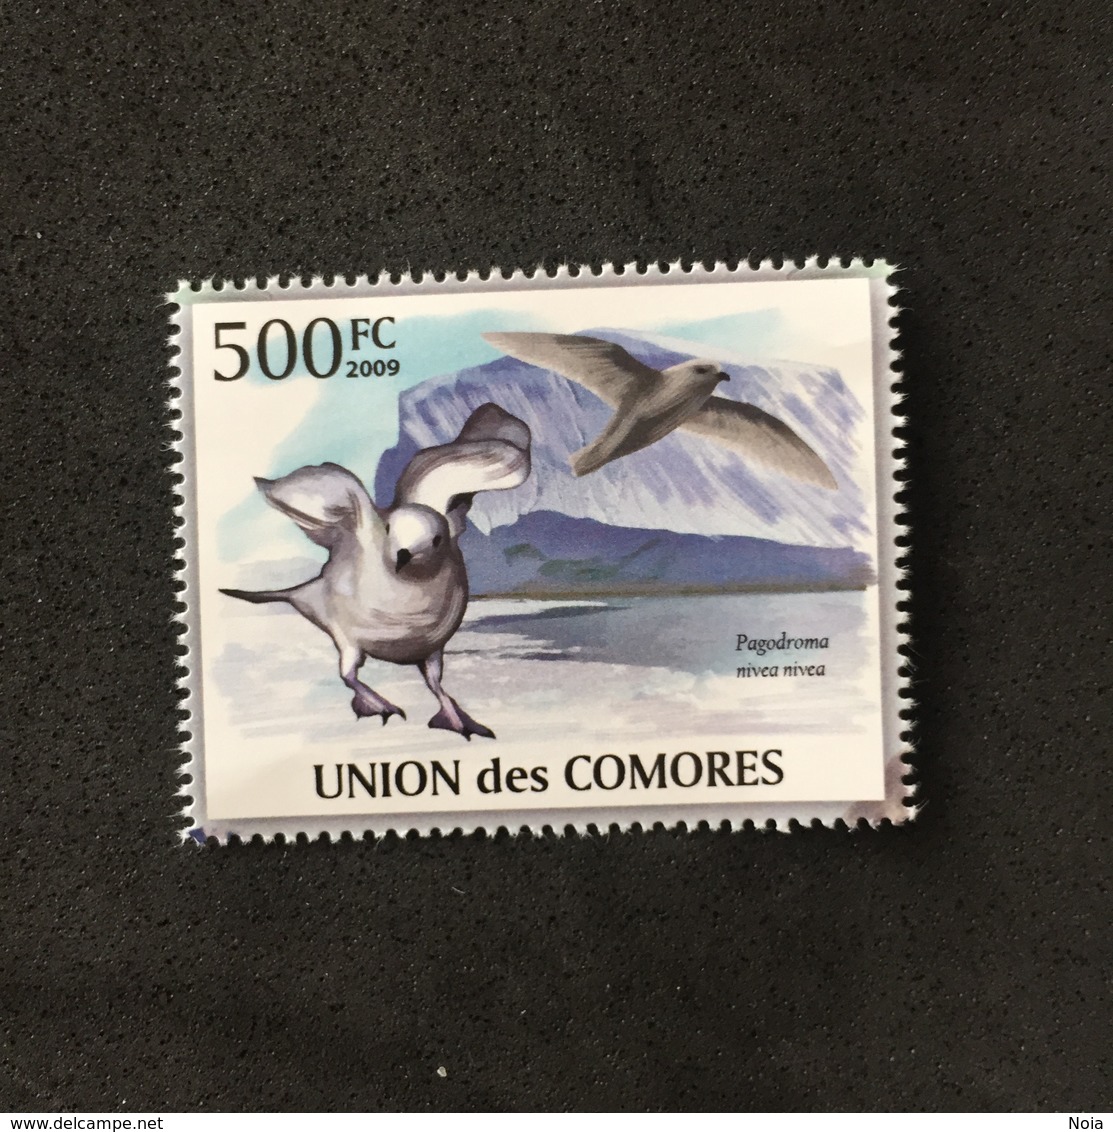 UNION DES COMORES. POLAR PHILATELY. MNH. D2805B - Seagulls